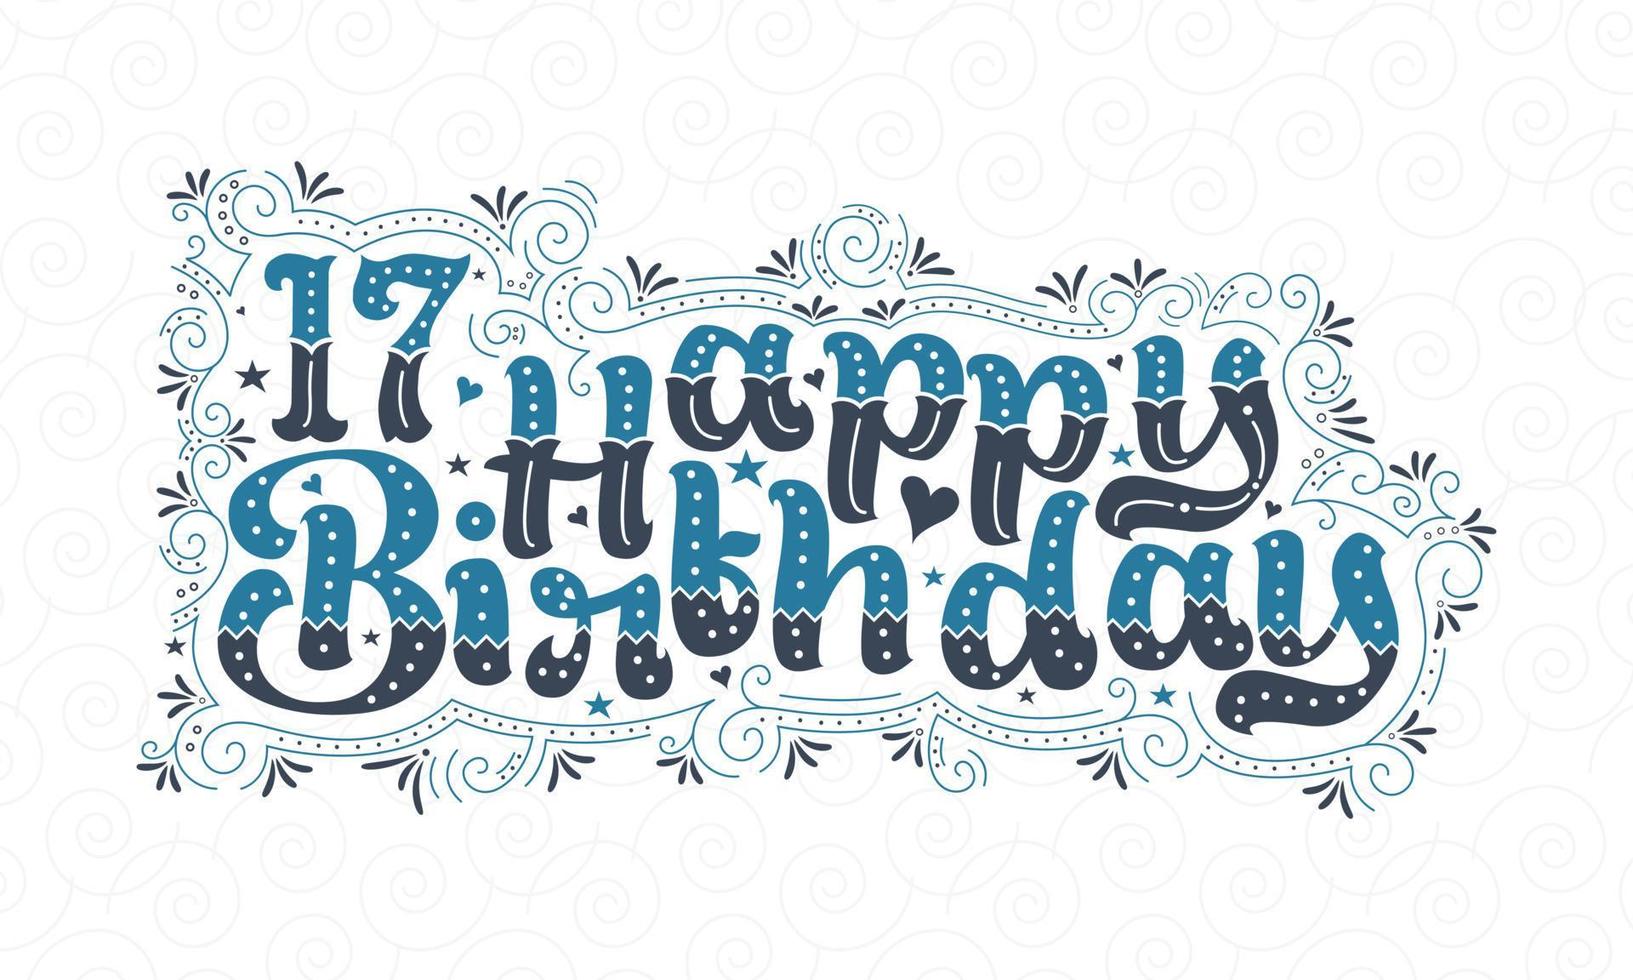 17e gelukkige verjaardag belettering, 17 jaar verjaardag mooi typografieontwerp met blauwe en zwarte stippen, lijnen en bladeren. vector